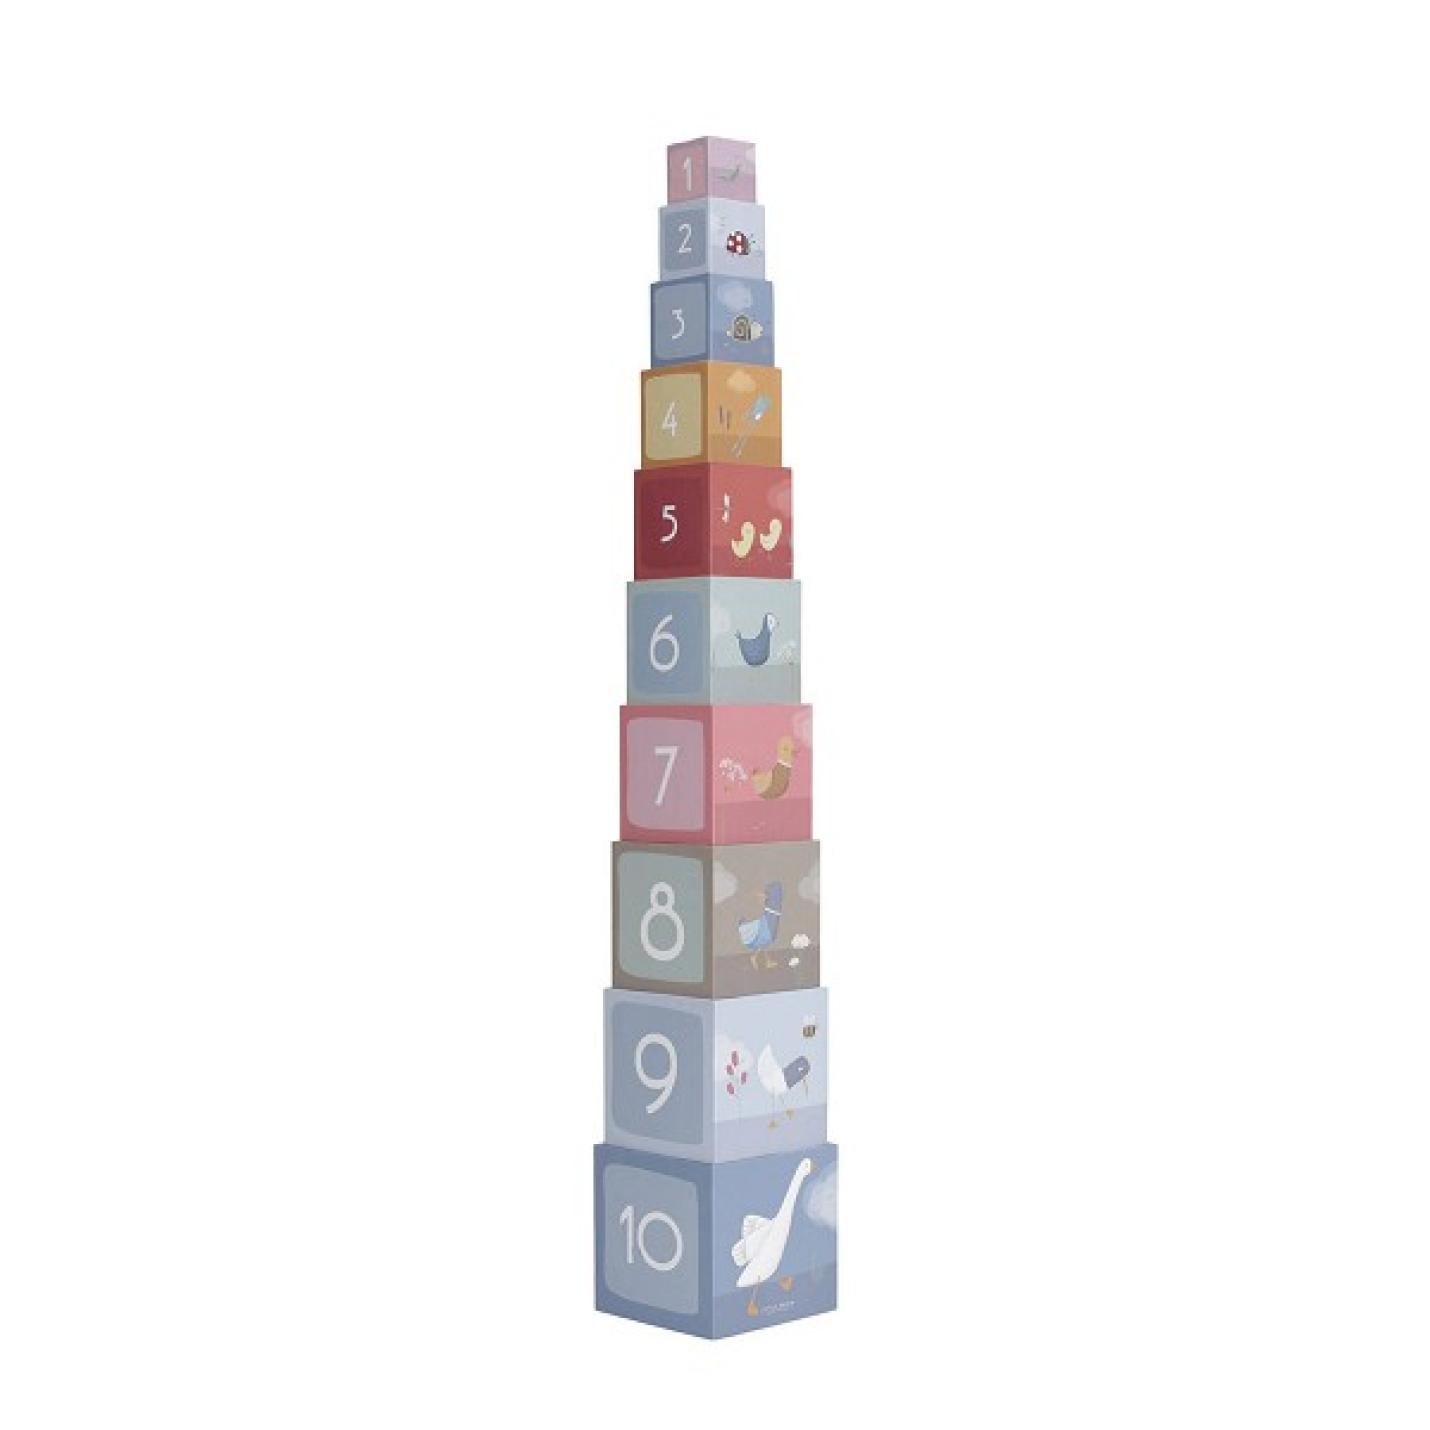 Stapelblokken Gans Little Dutch 7 kartonnen kubussen die in elkaar passen kleur blauw, groen, grijs rood afbeeldingen van ganzen erop